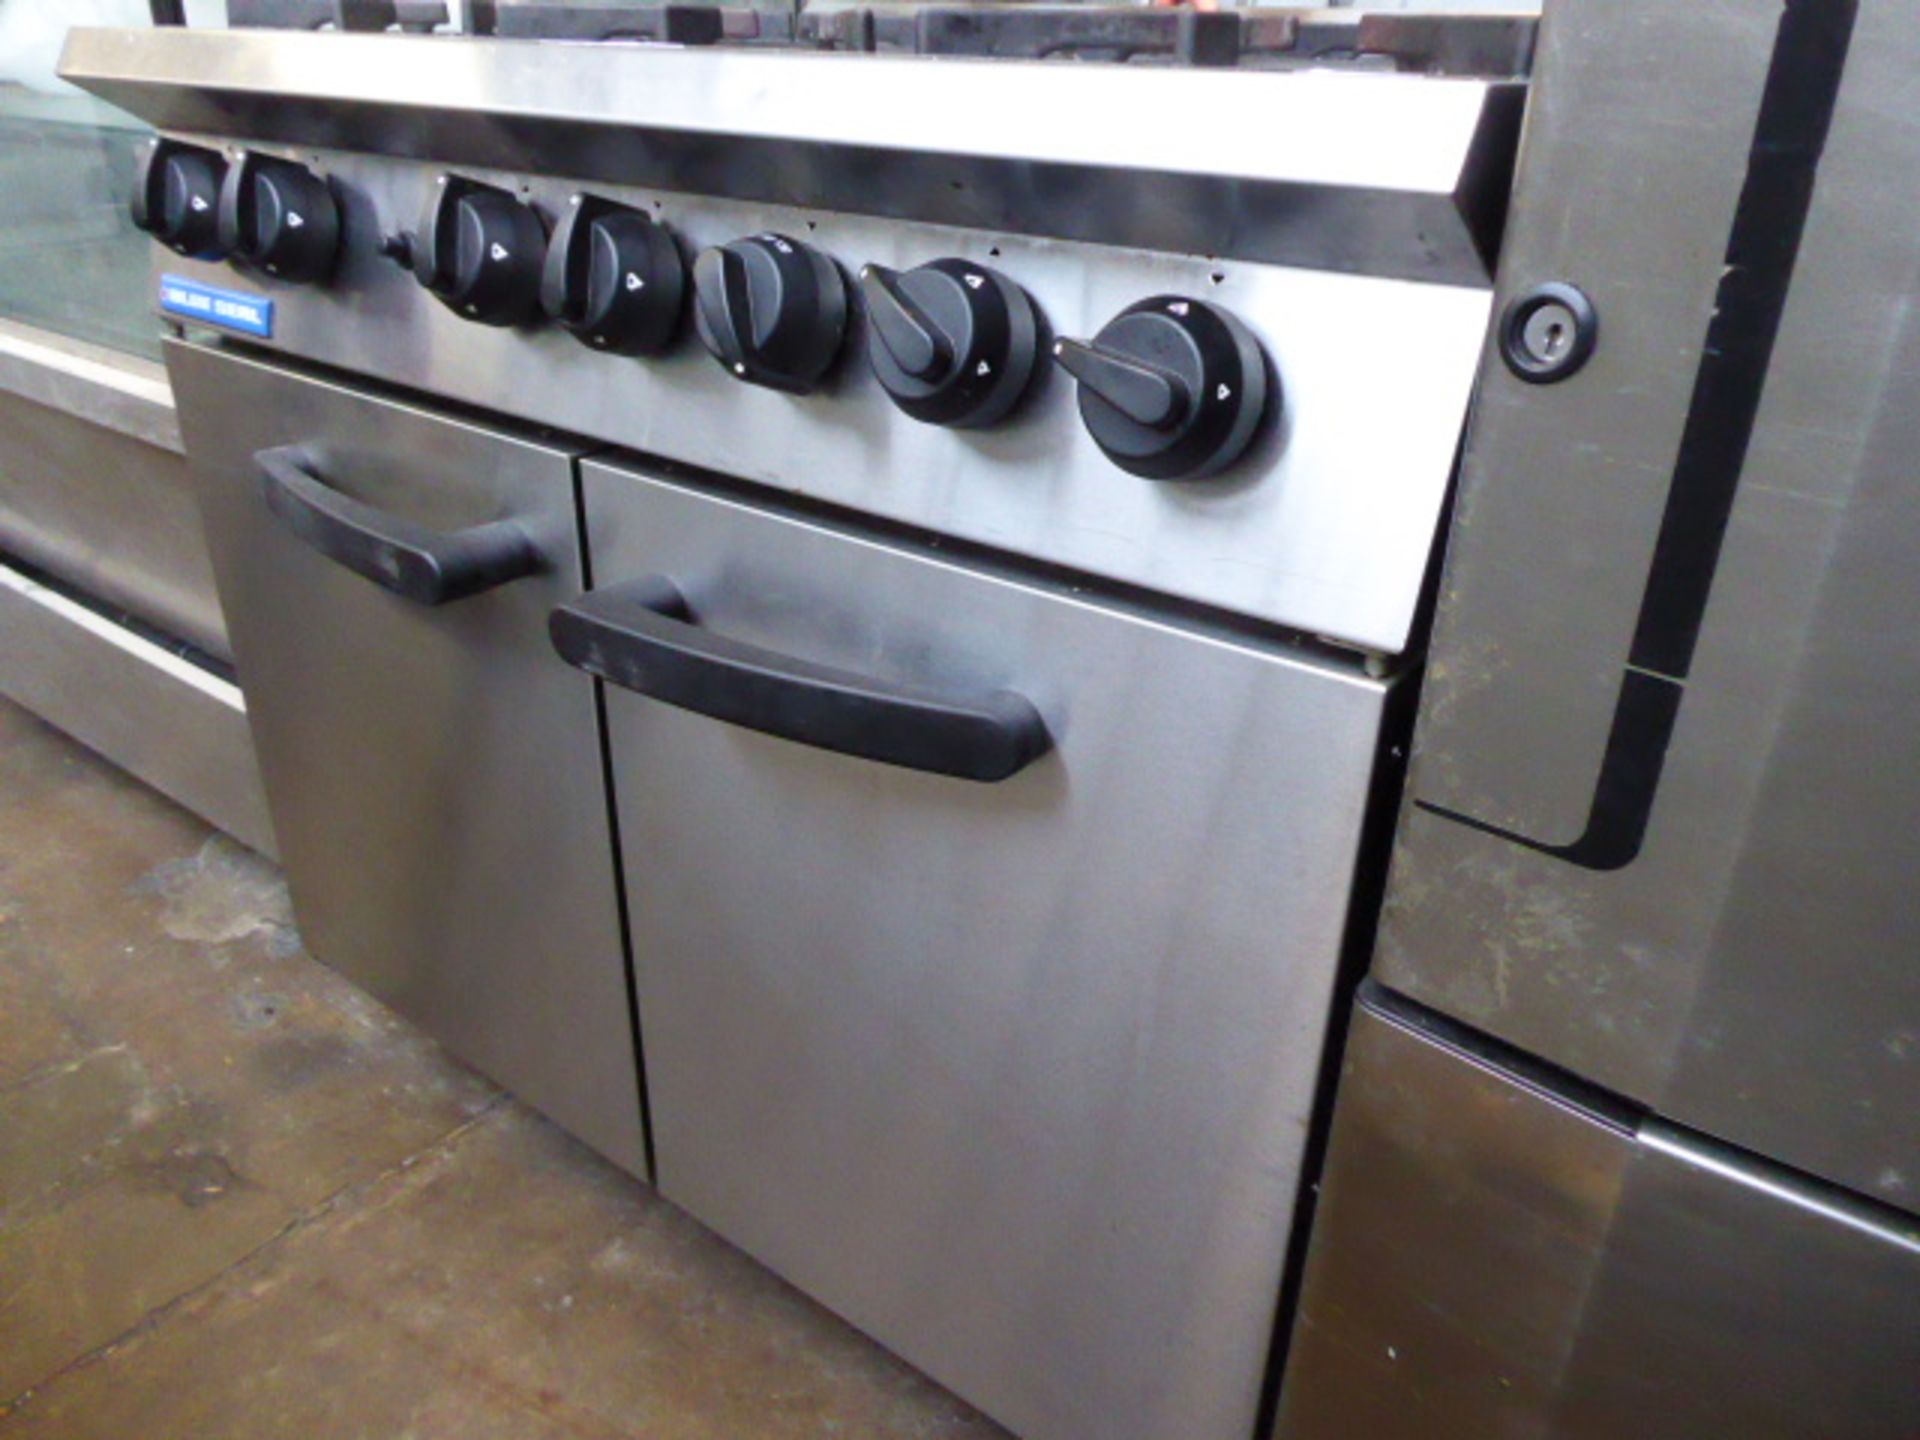 90cm LPG Blueseal 6 burner cooker with 2 door oven under - Image 2 of 2